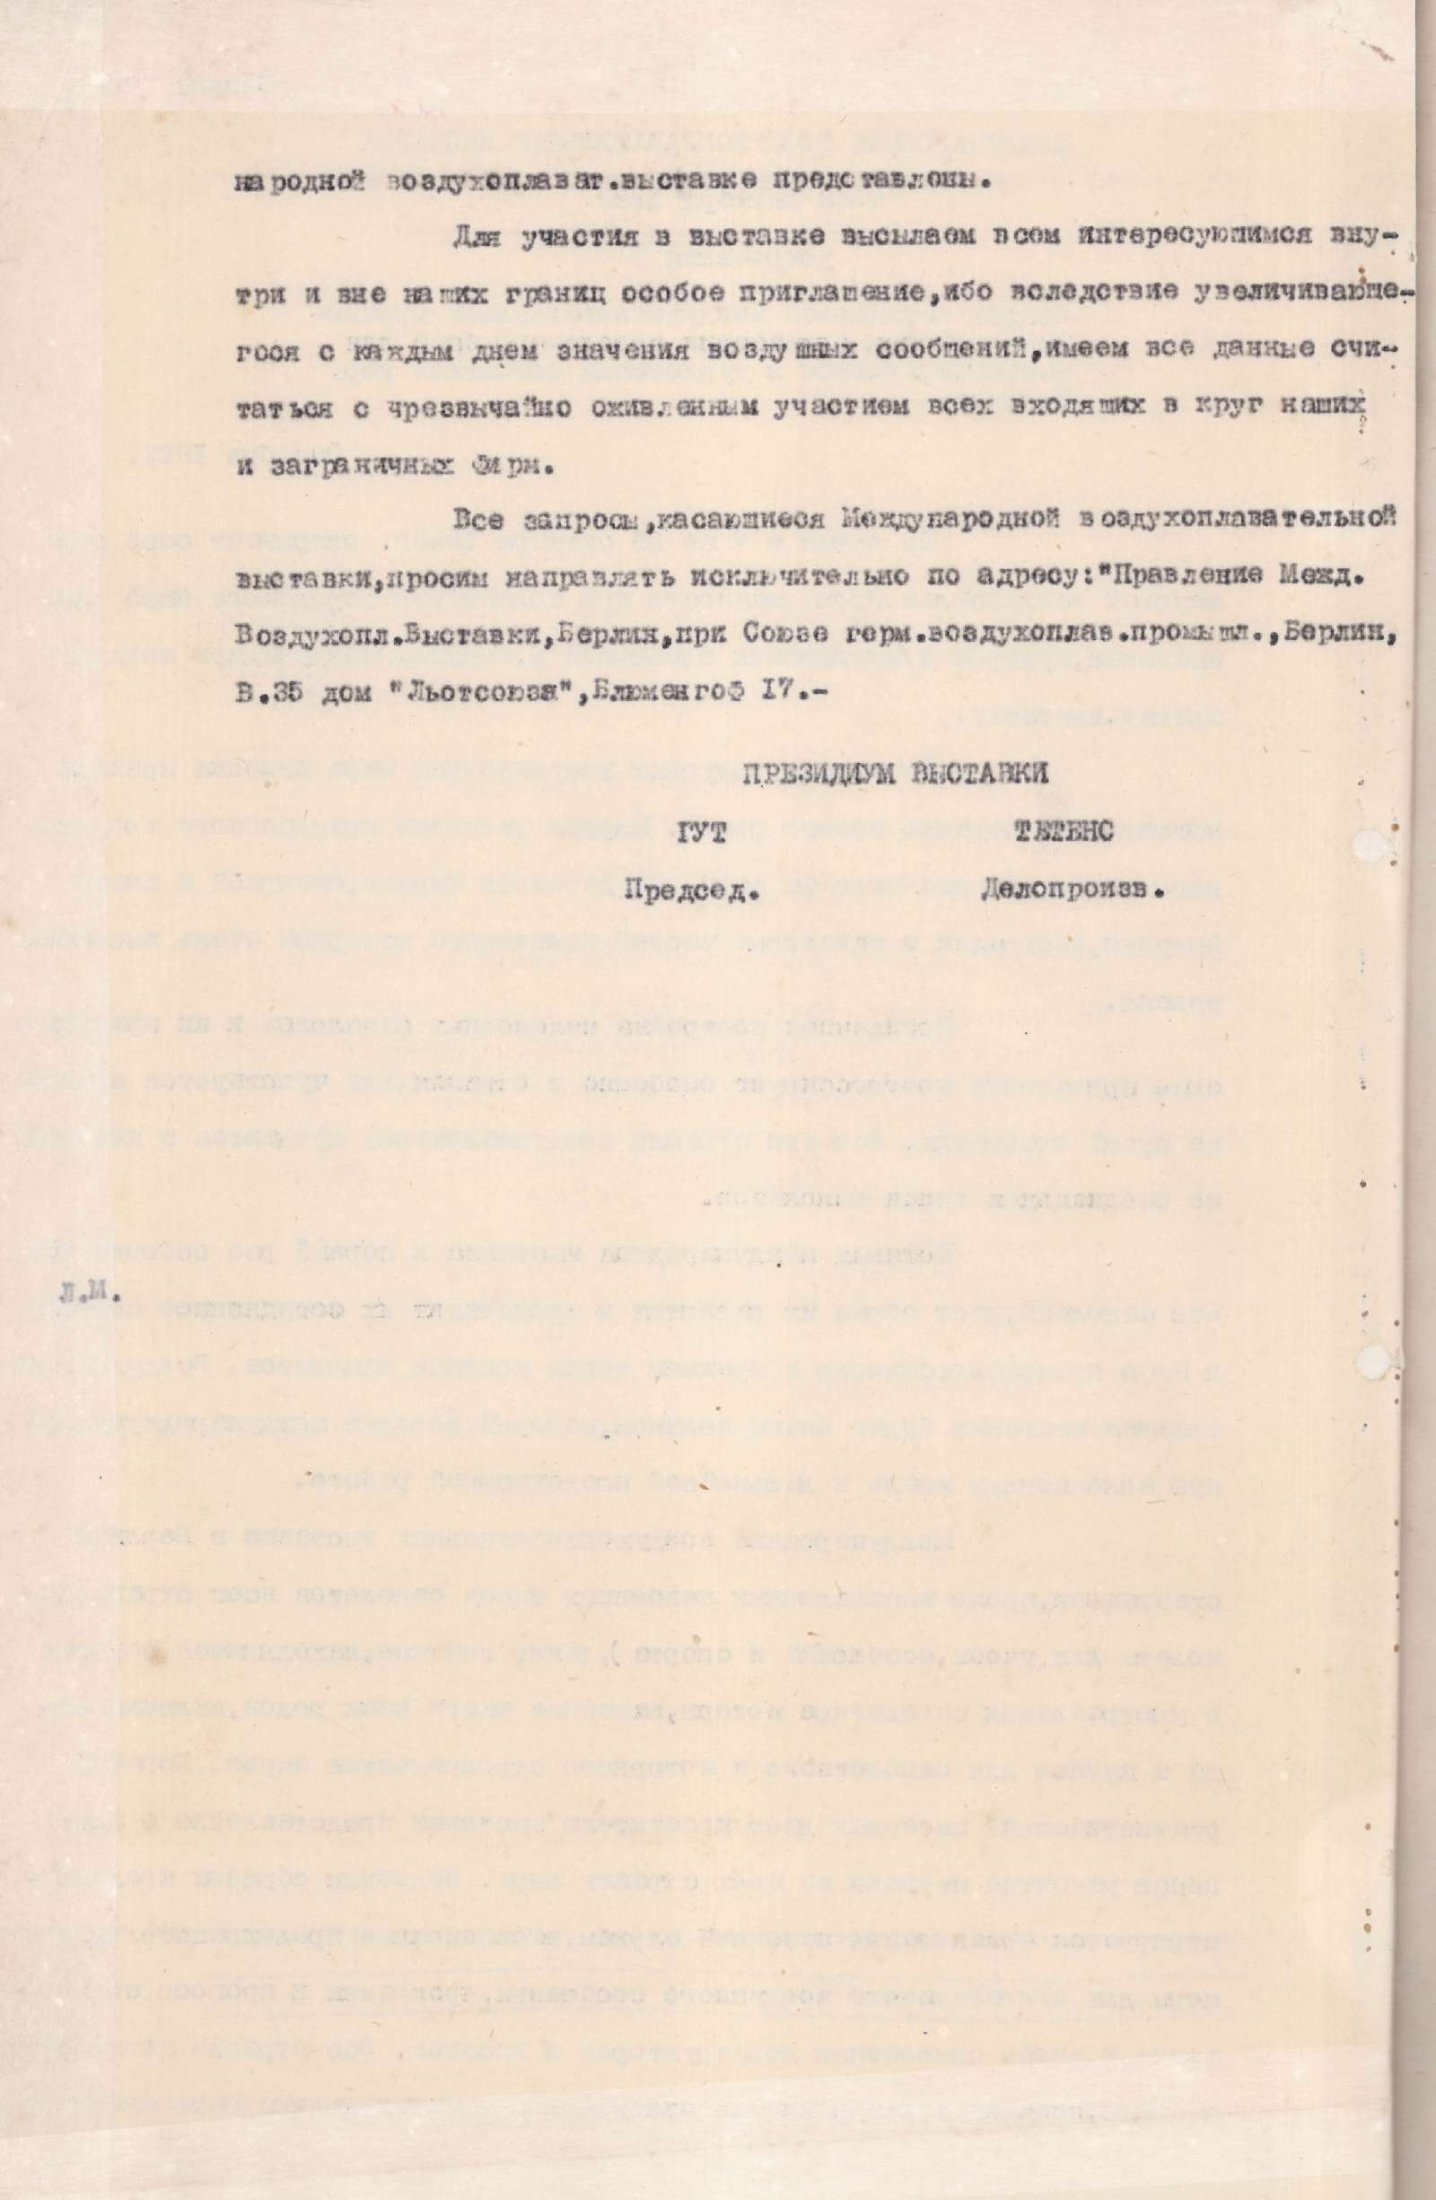 Повідомлення Президії Міжнародної виставки з повітроплавання про відкриття та проходження у м. Берліні 7 — 28 жовтня 1928 року Міжнародної повітроплавальної виставки. Жовтень 1928 р.